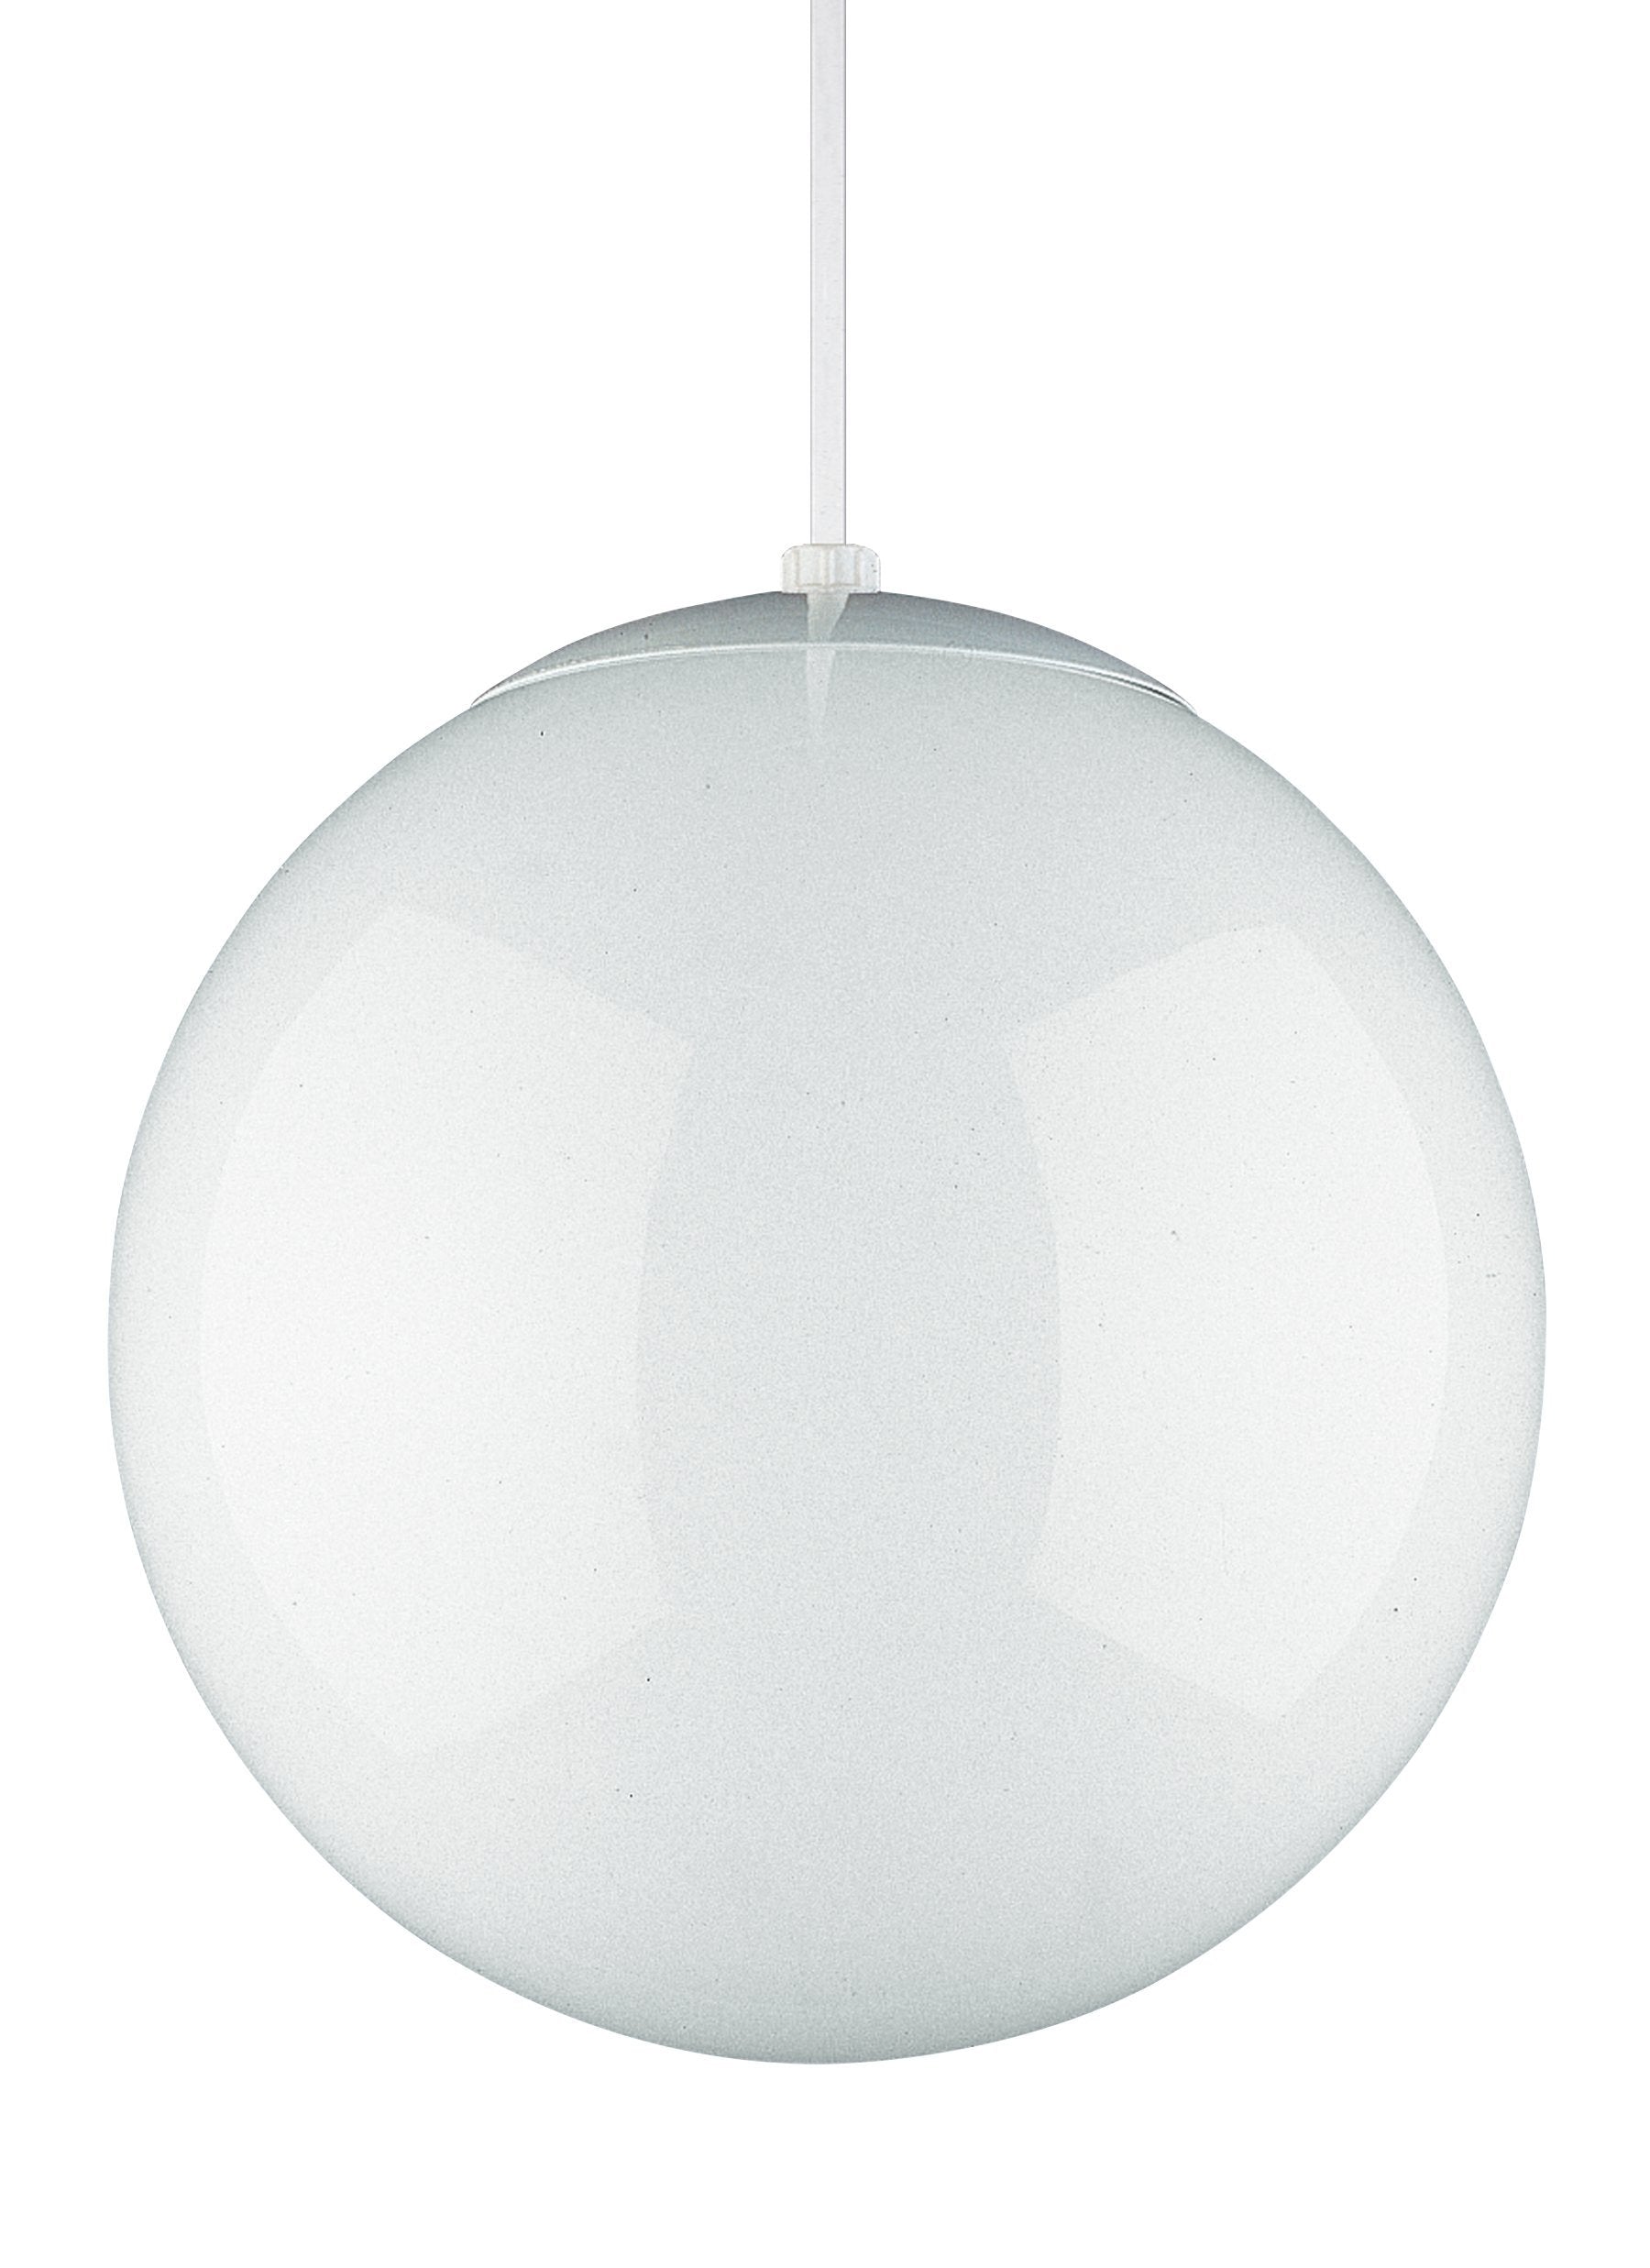 Leo - Hanging Globe One Light Pendant - White Pendants Sea Gull Lighting 